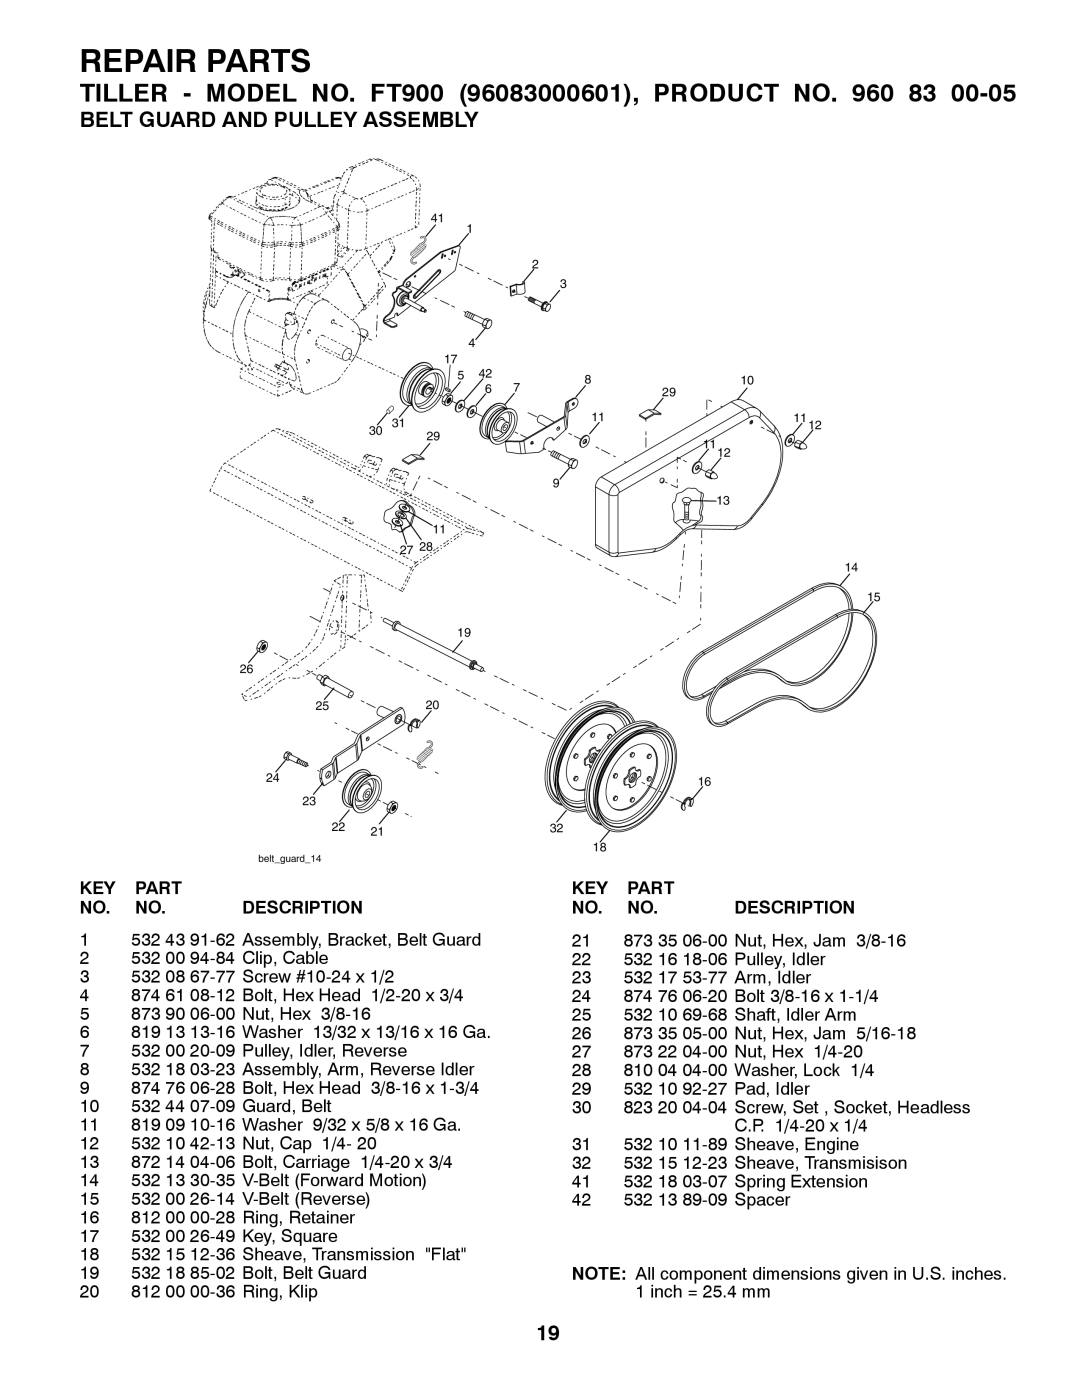 Husqvarna Belt Guard And Pulley Assembly, Repair Parts, TILLER - MODEL NO. FT900 96083000601, PRODUCT NO, Description 